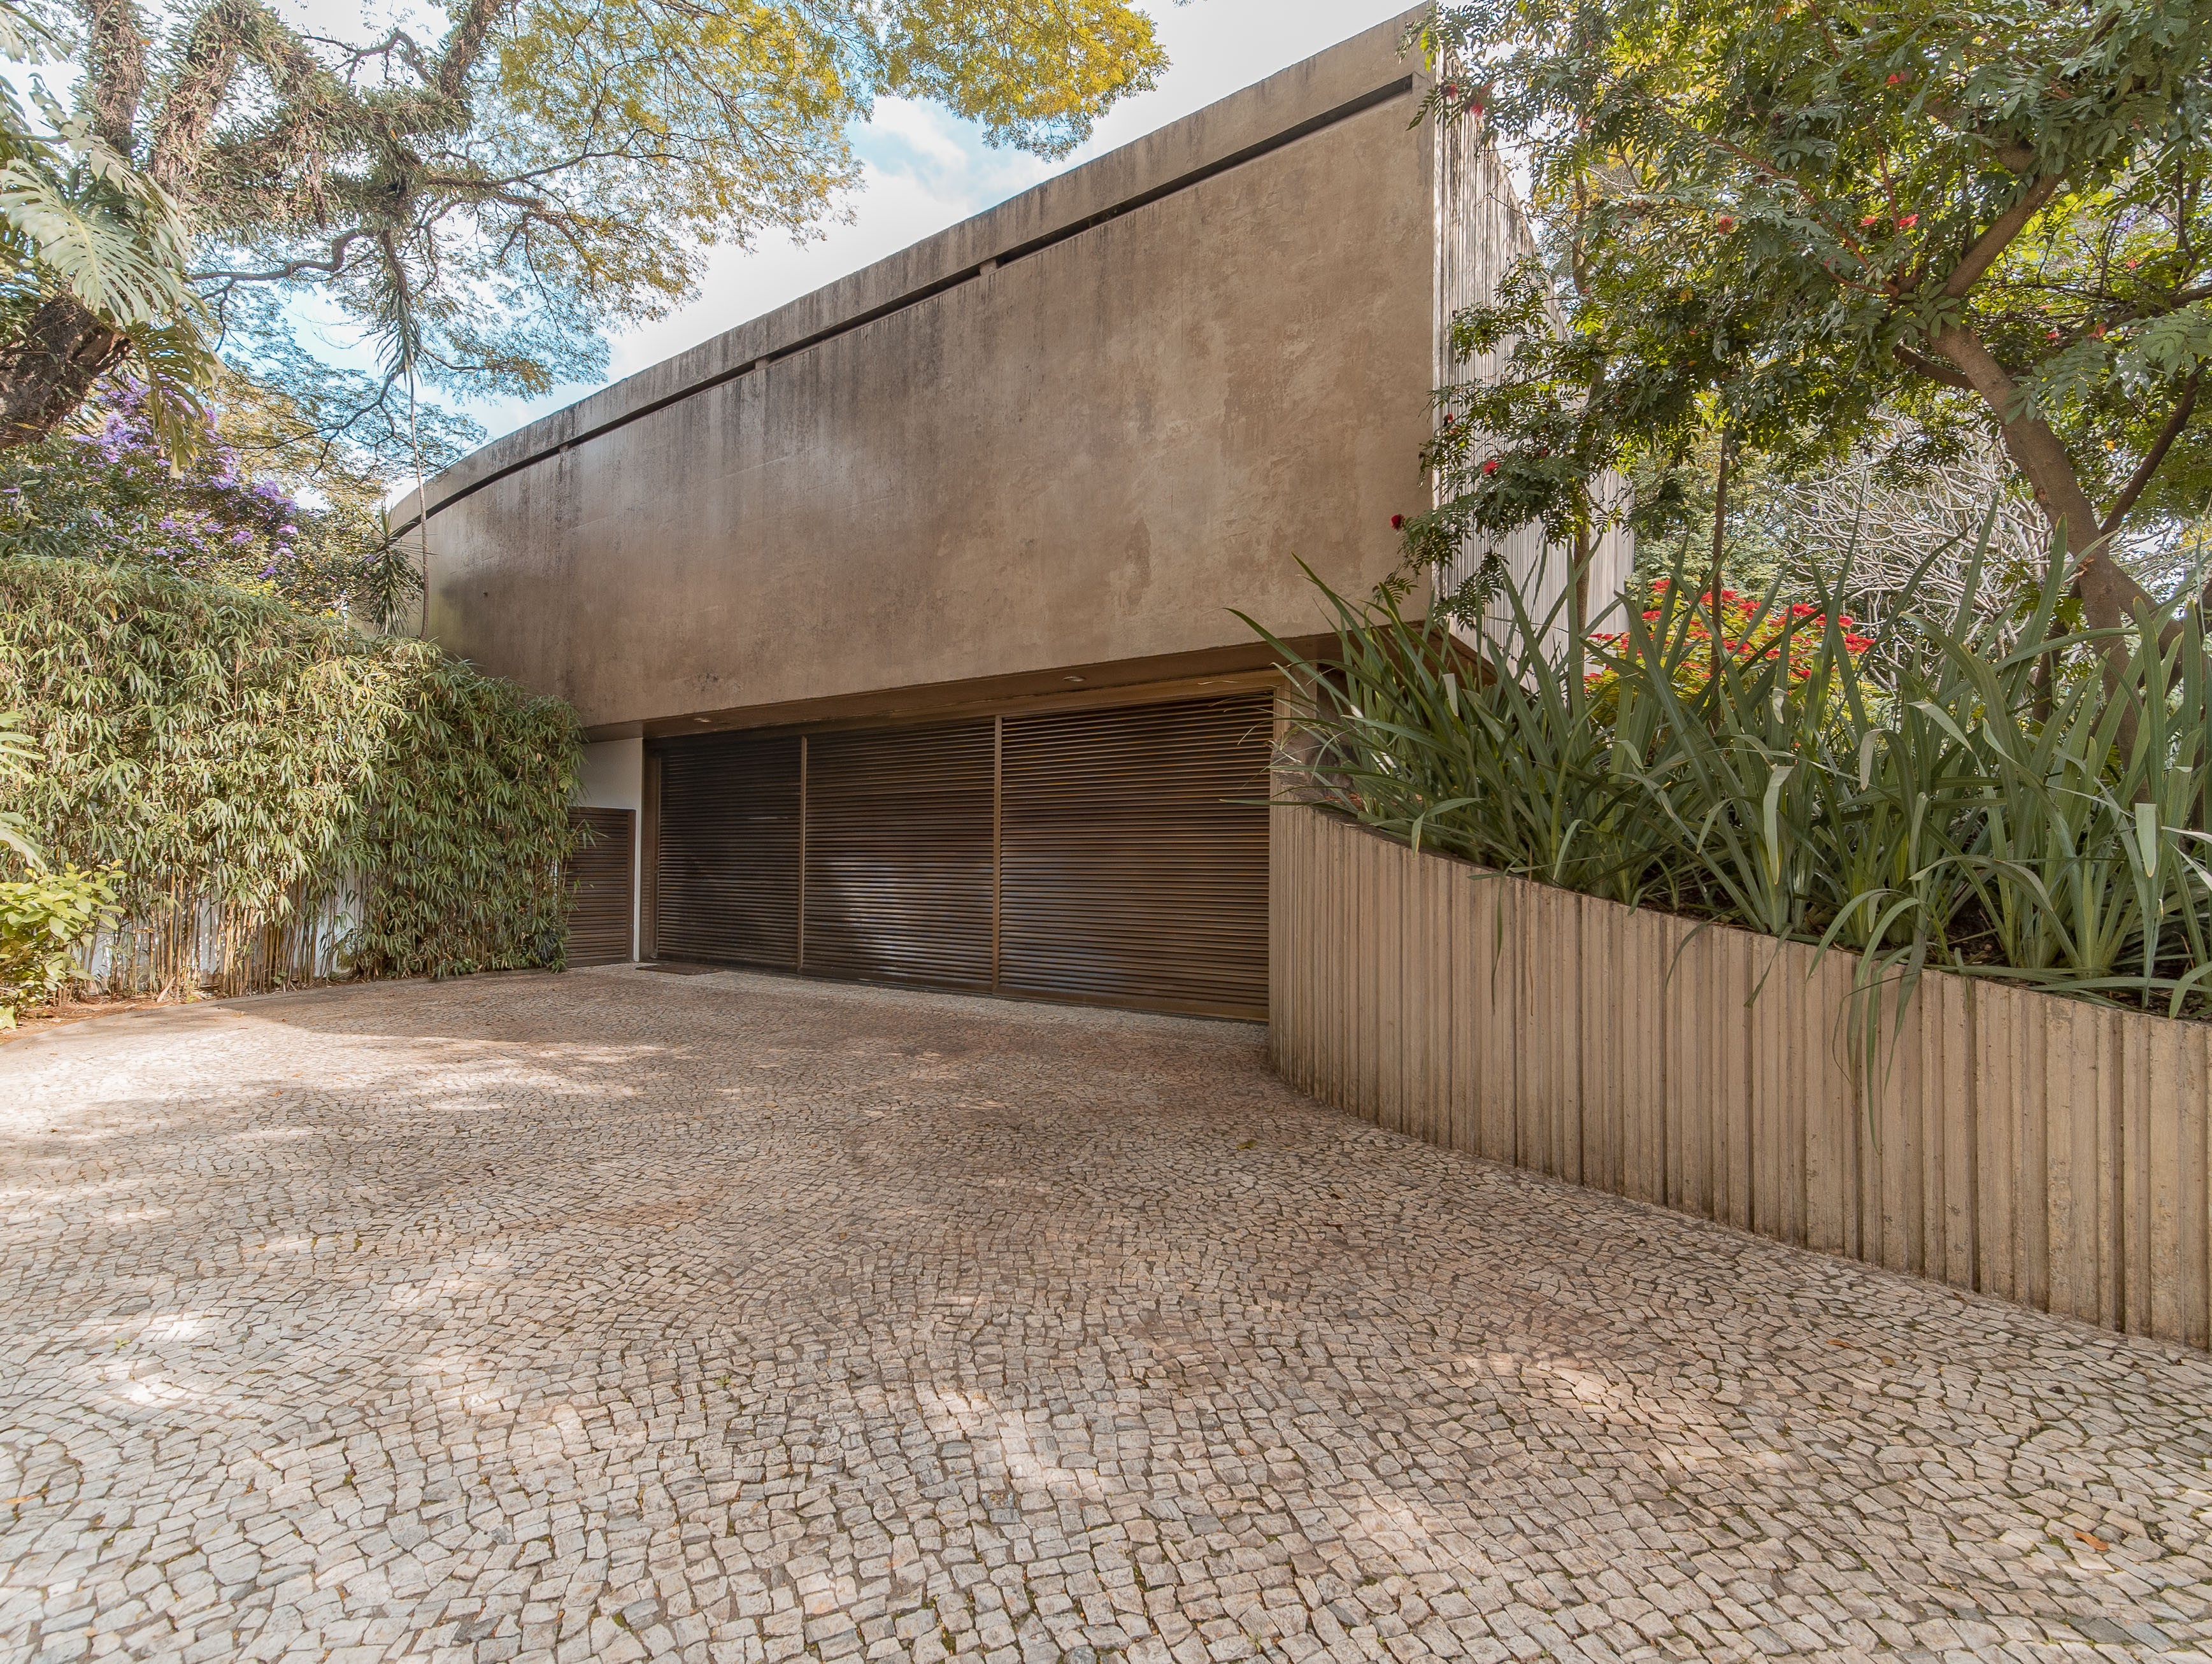 Casa desenhada por Oscar Niemeyer está à venda por R$ 15 milhões em SP (Foto: Divulgação/Shark Empreendimentos Imobiliários)